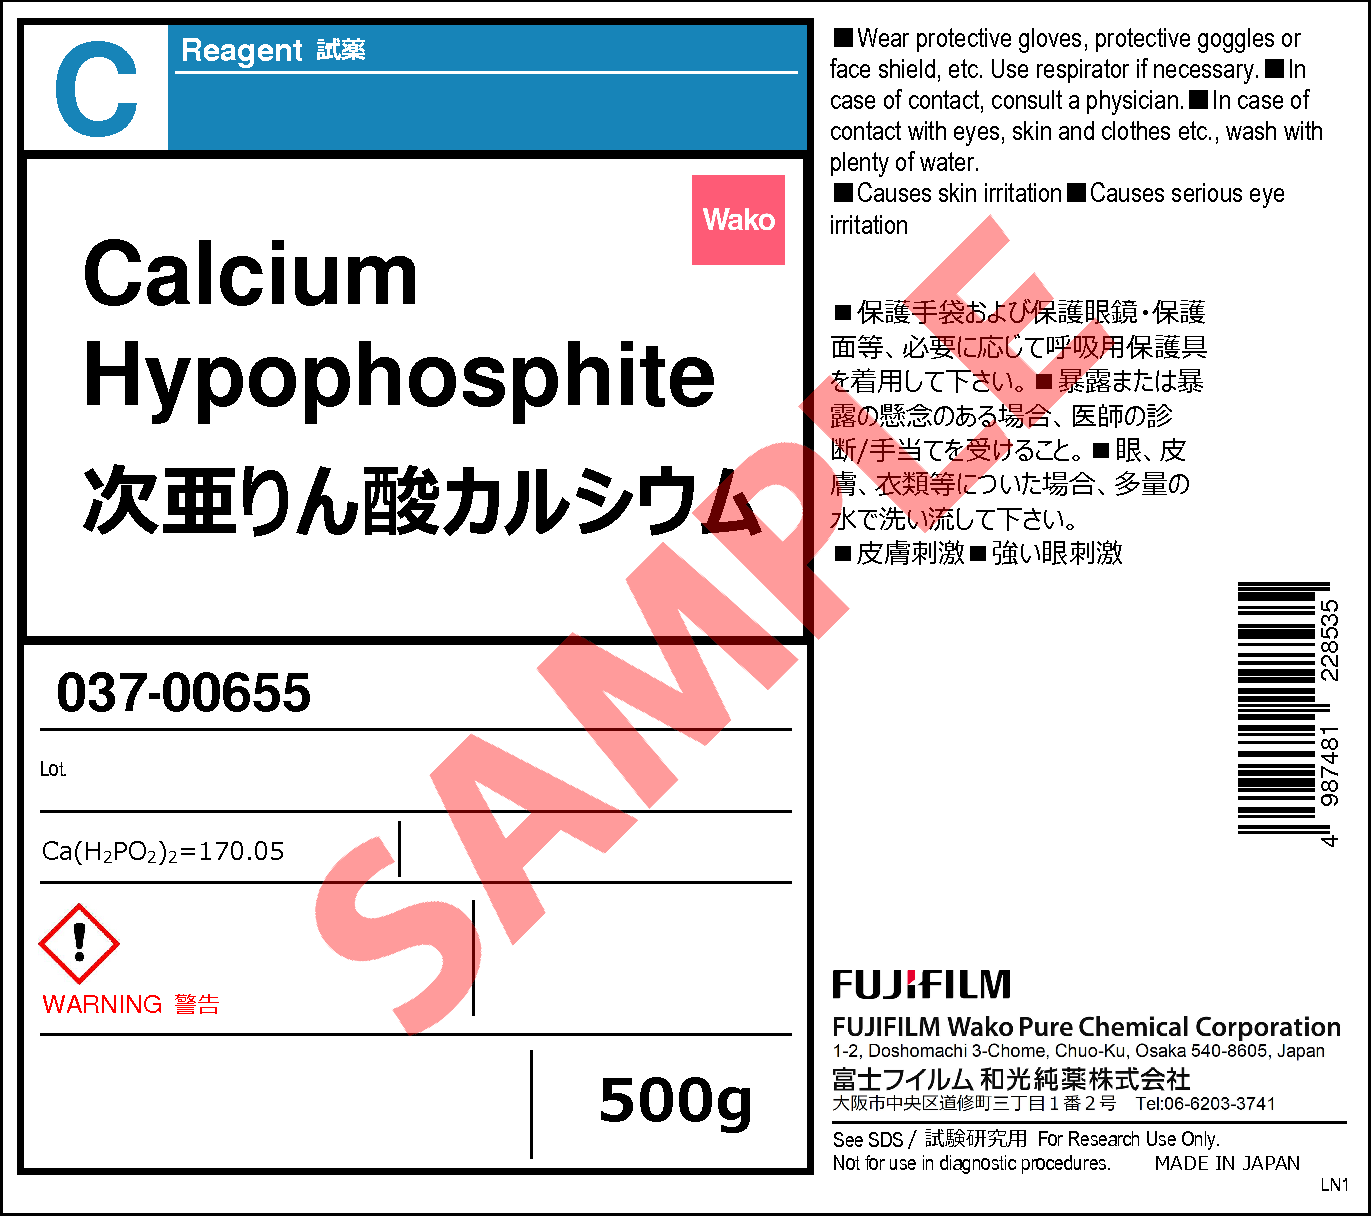 7789-79-9・次亜りん酸カルシウム・Calcium Hypophosphite・033-00652 